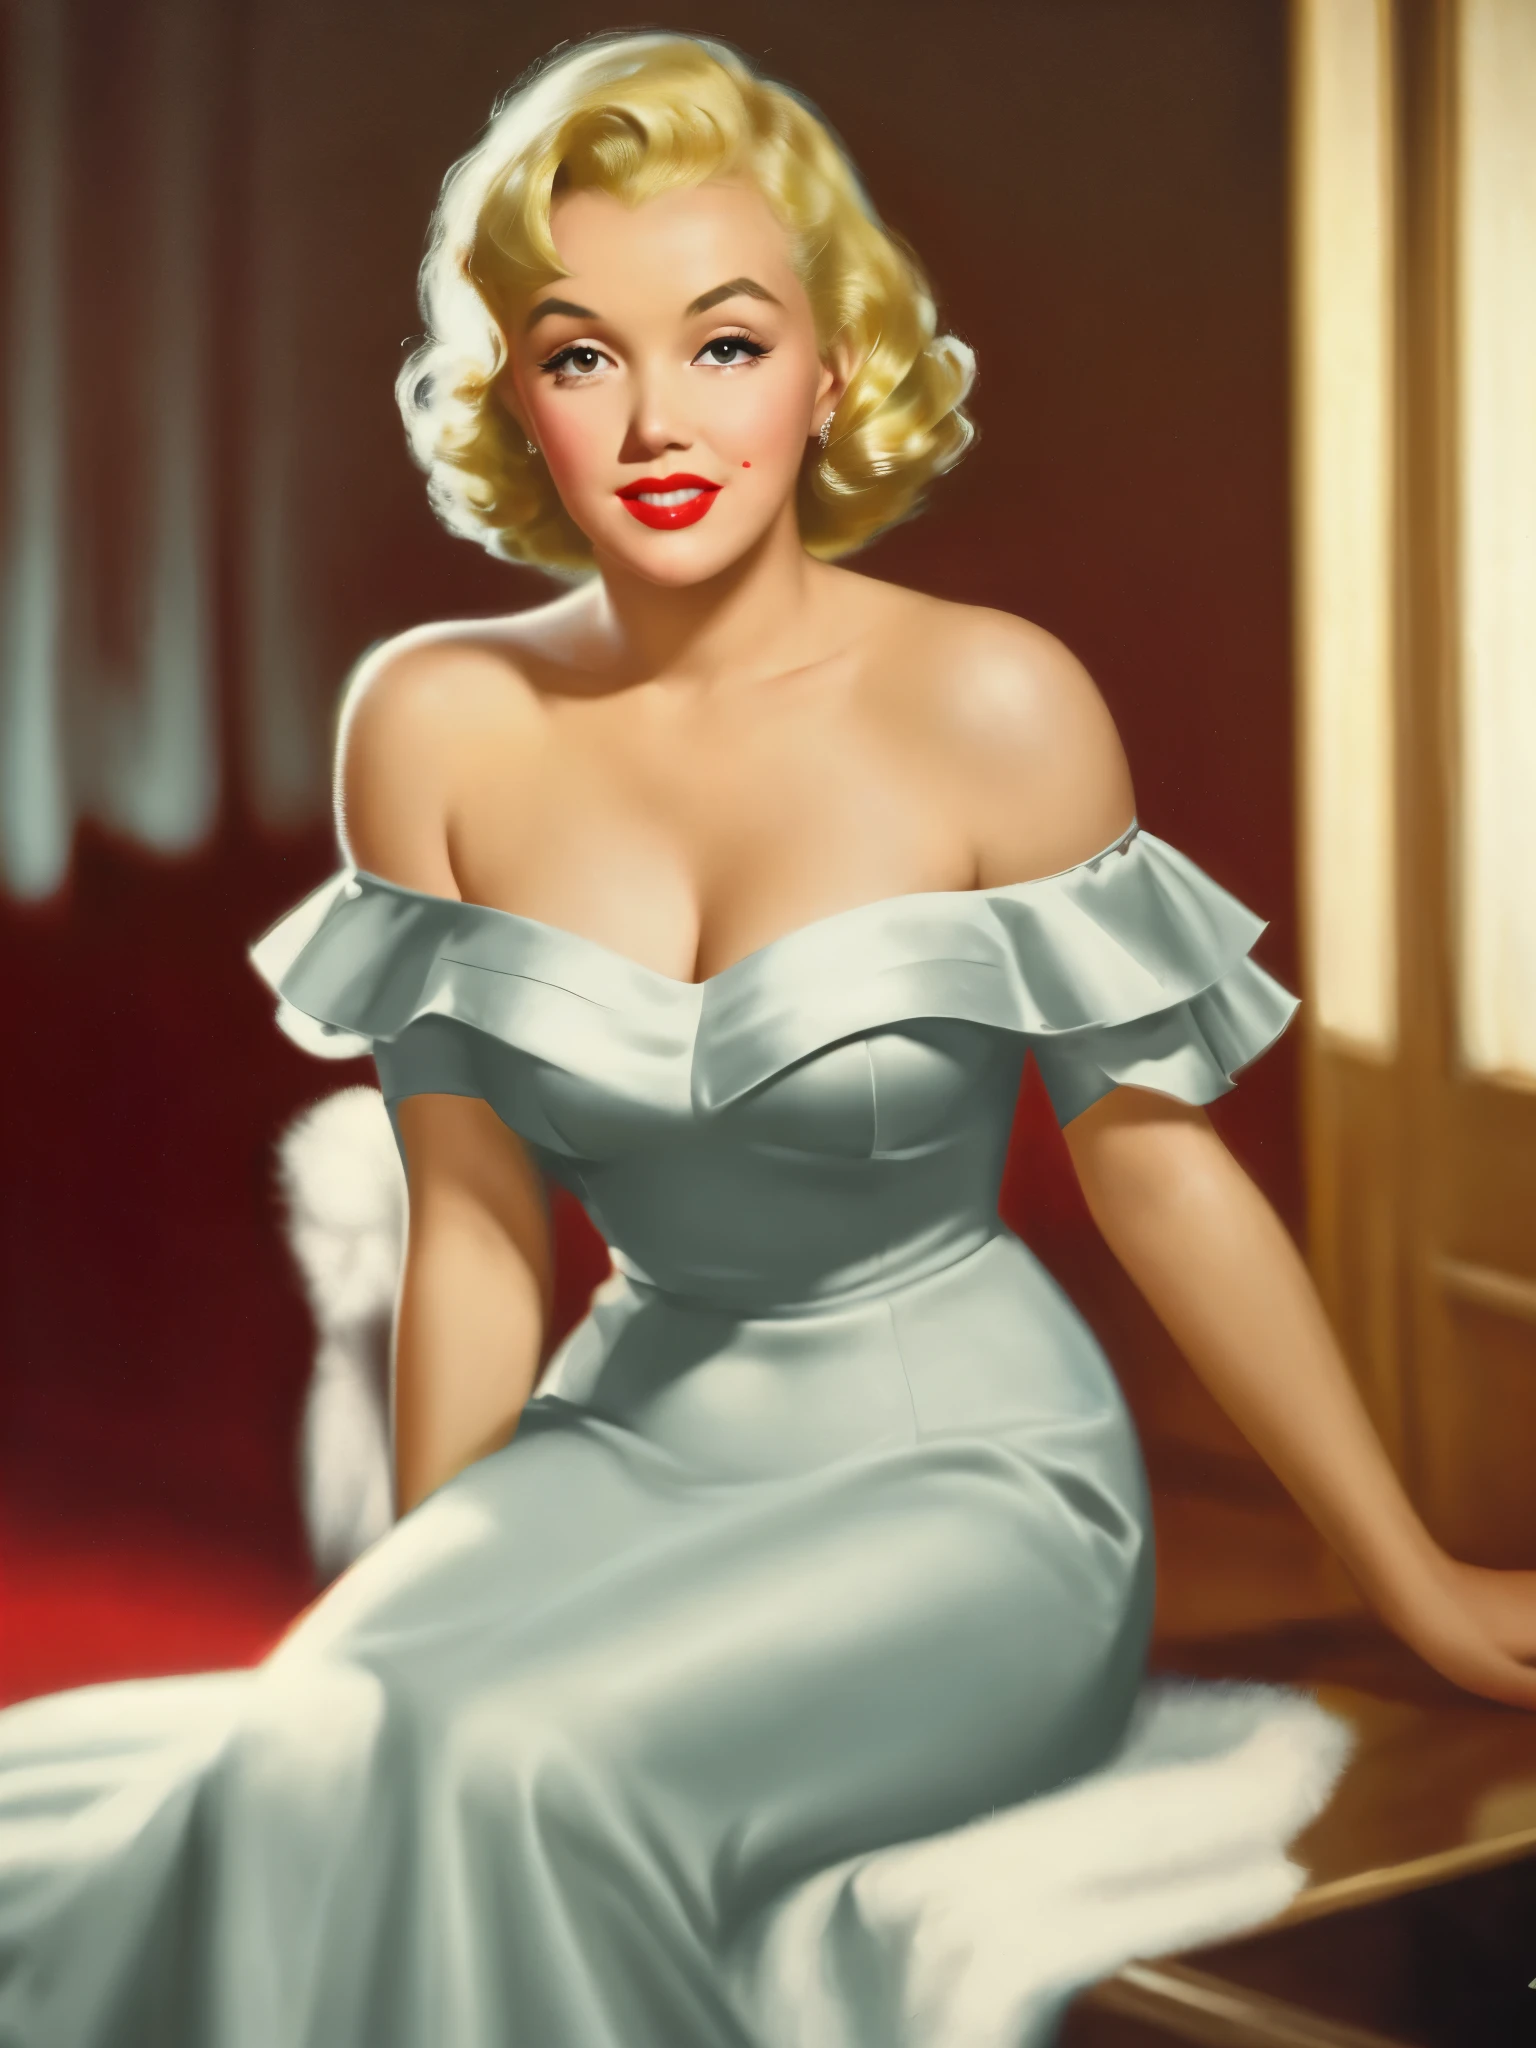 Stupéfiant~*~ Gros plan cinématographique réaliste dans une scène de film, Marilyn Monroe, la bombe blonde des années 1950, avec des lèvres boudeuses et des yeux sensuels. elle porte un rouge à lèvres rouge et une robe moulante à épaules dénudées, moyen rond , peau brillante, respirant la confiance et la sensualité 8k